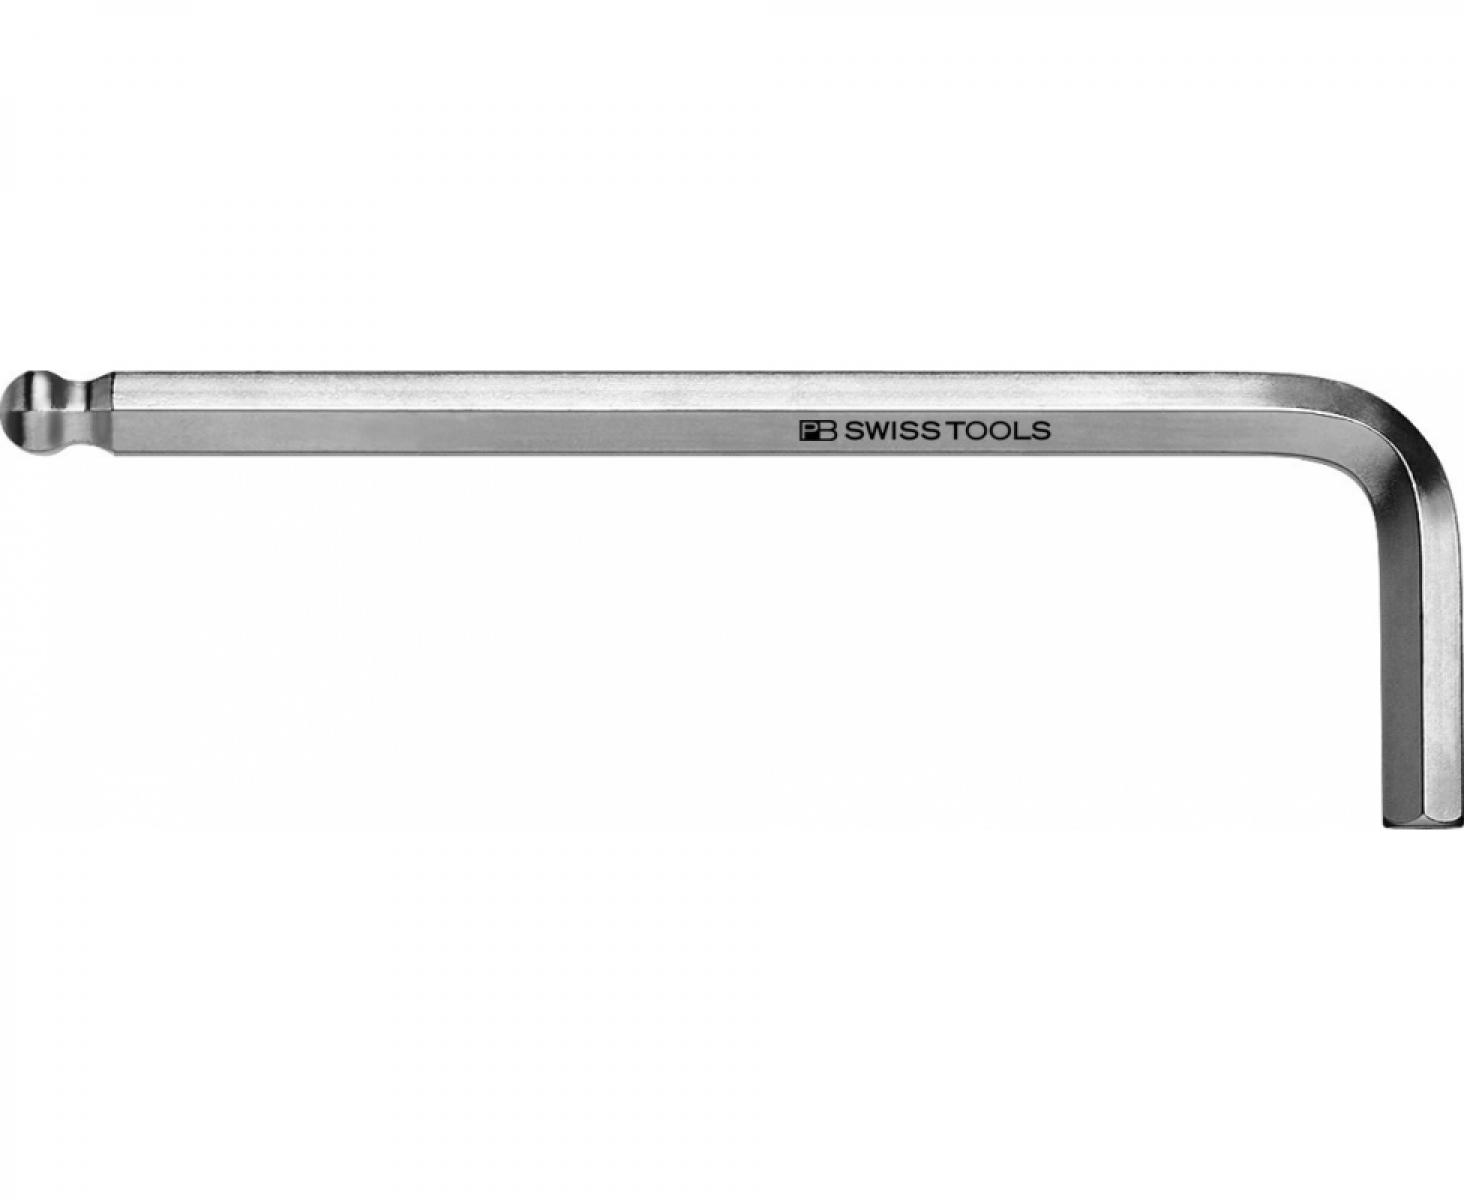 Ключ штифтовый длинный HEX PB Swiss Tools PB 212Z.L 9/64 со сферической головкой дюймовый